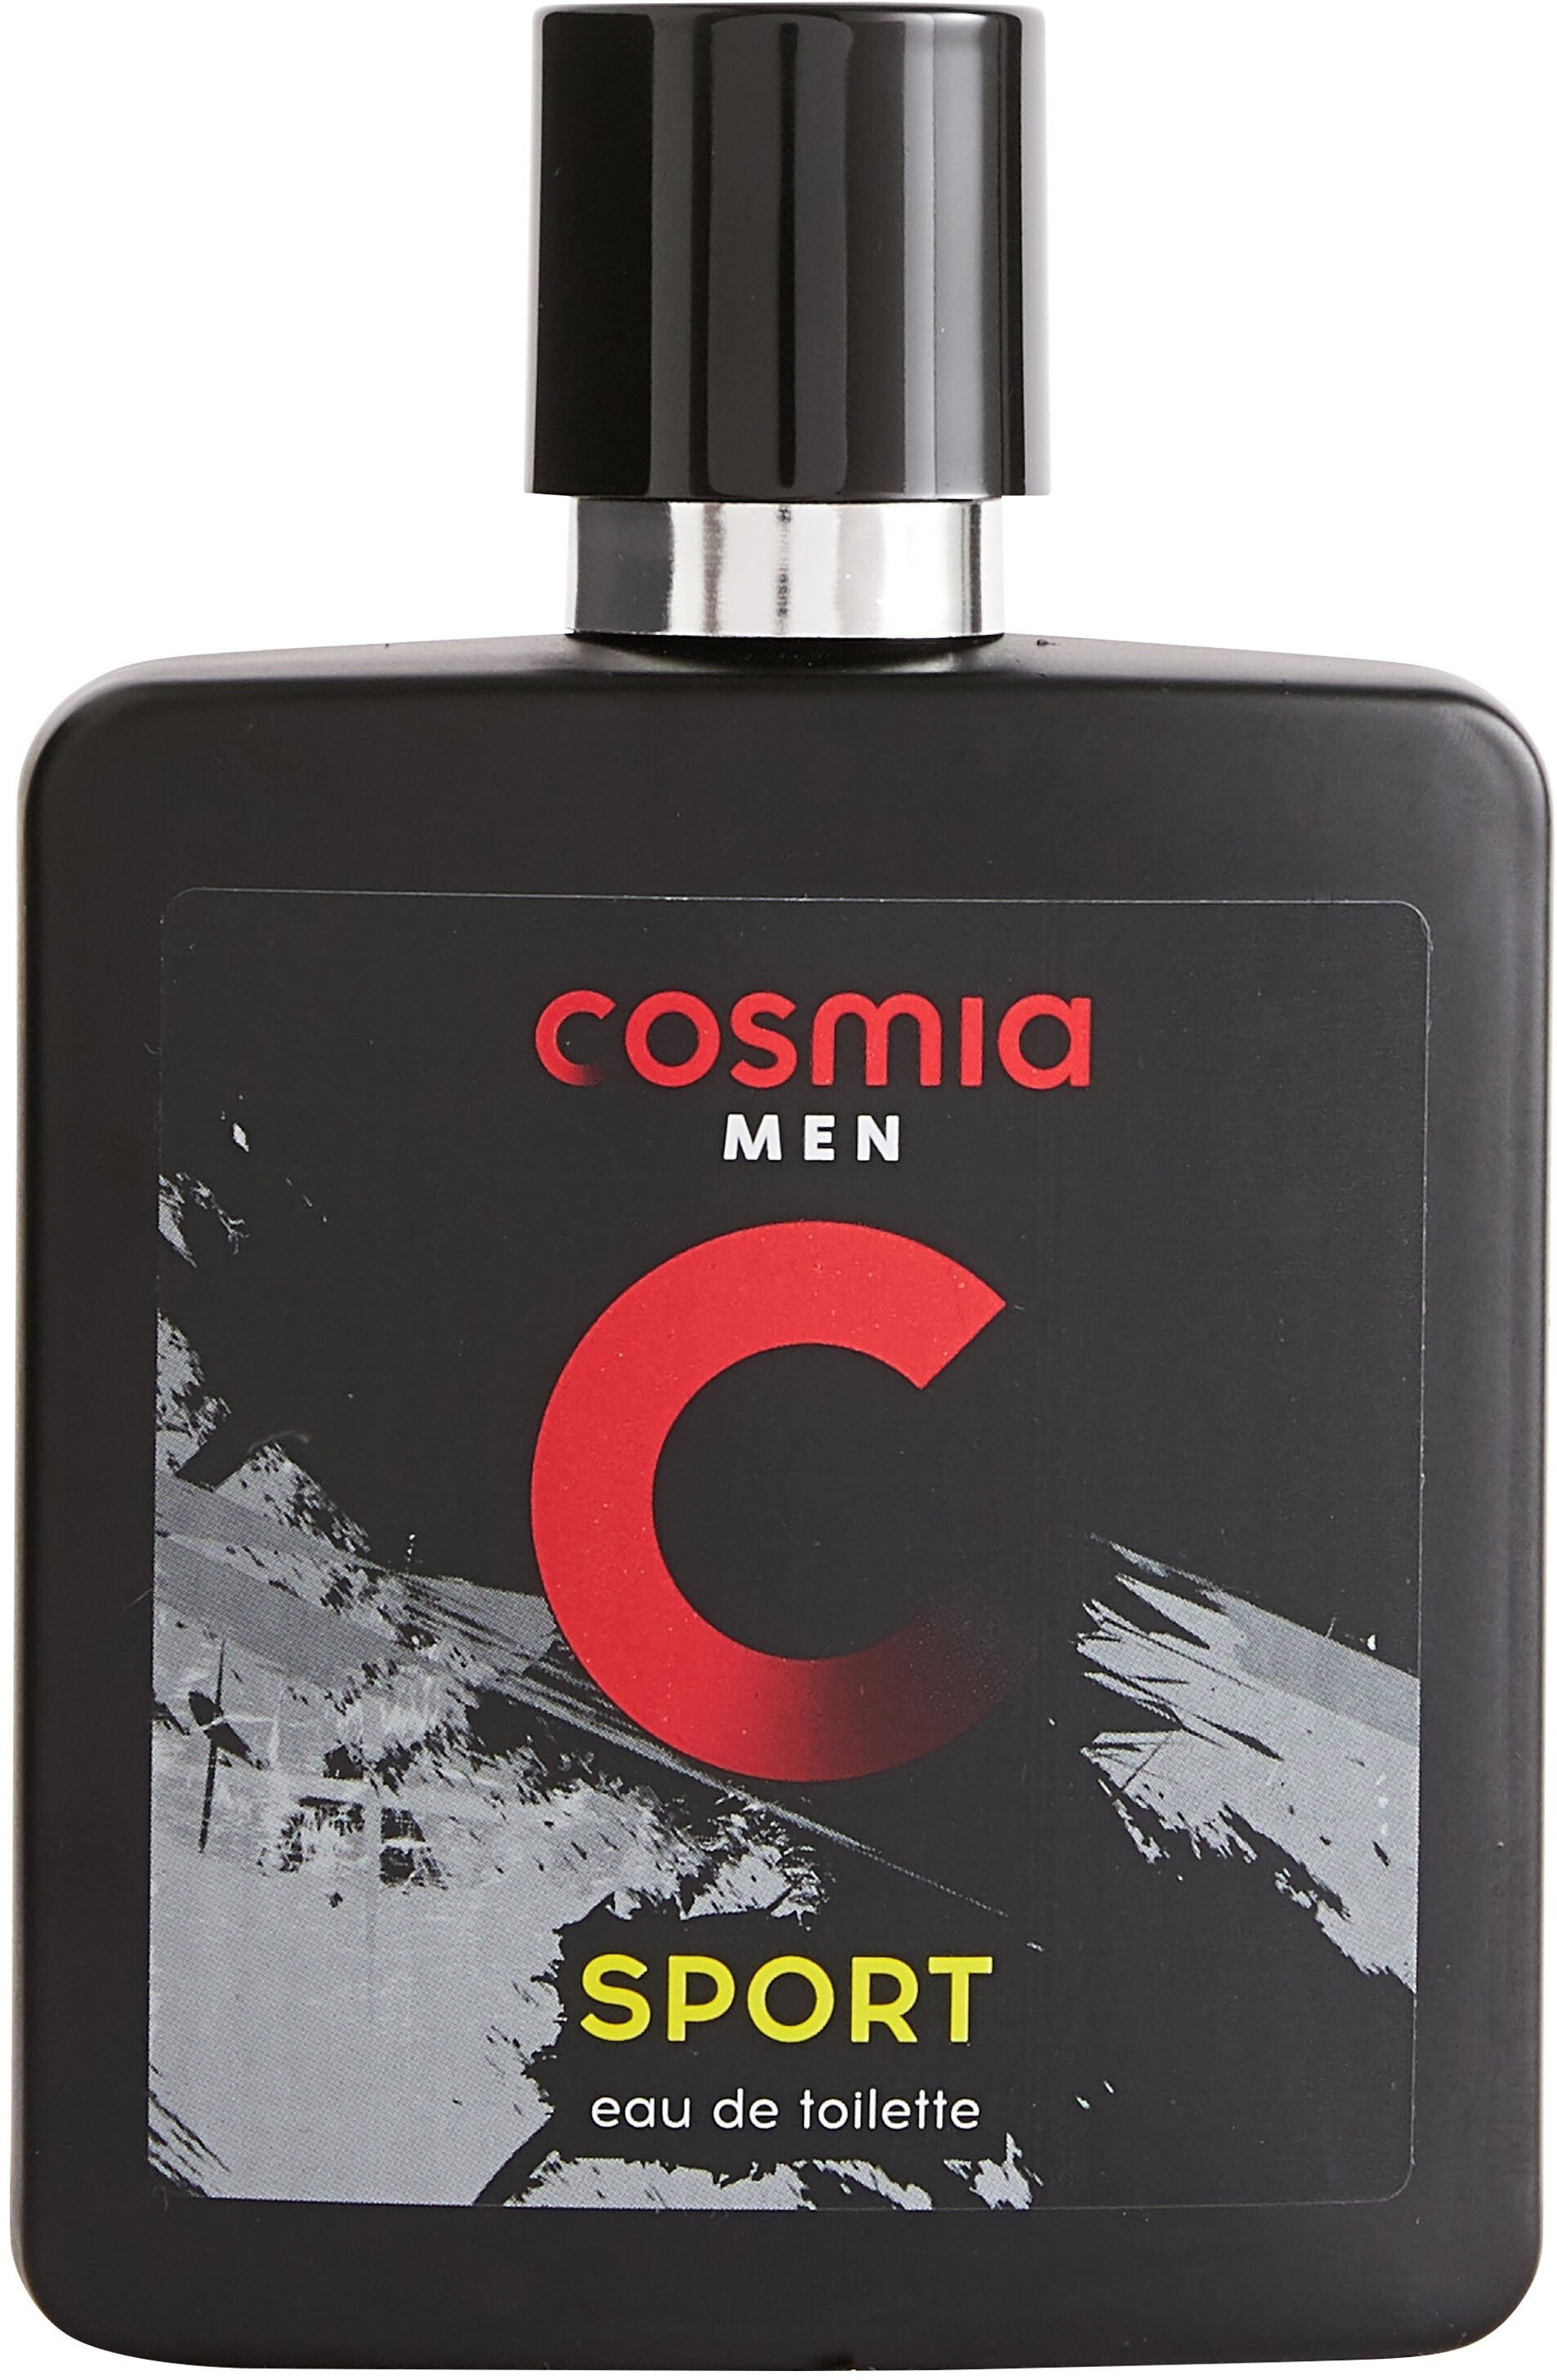 Cosmia - eau de toilette - sport - 100 ml - Product - en